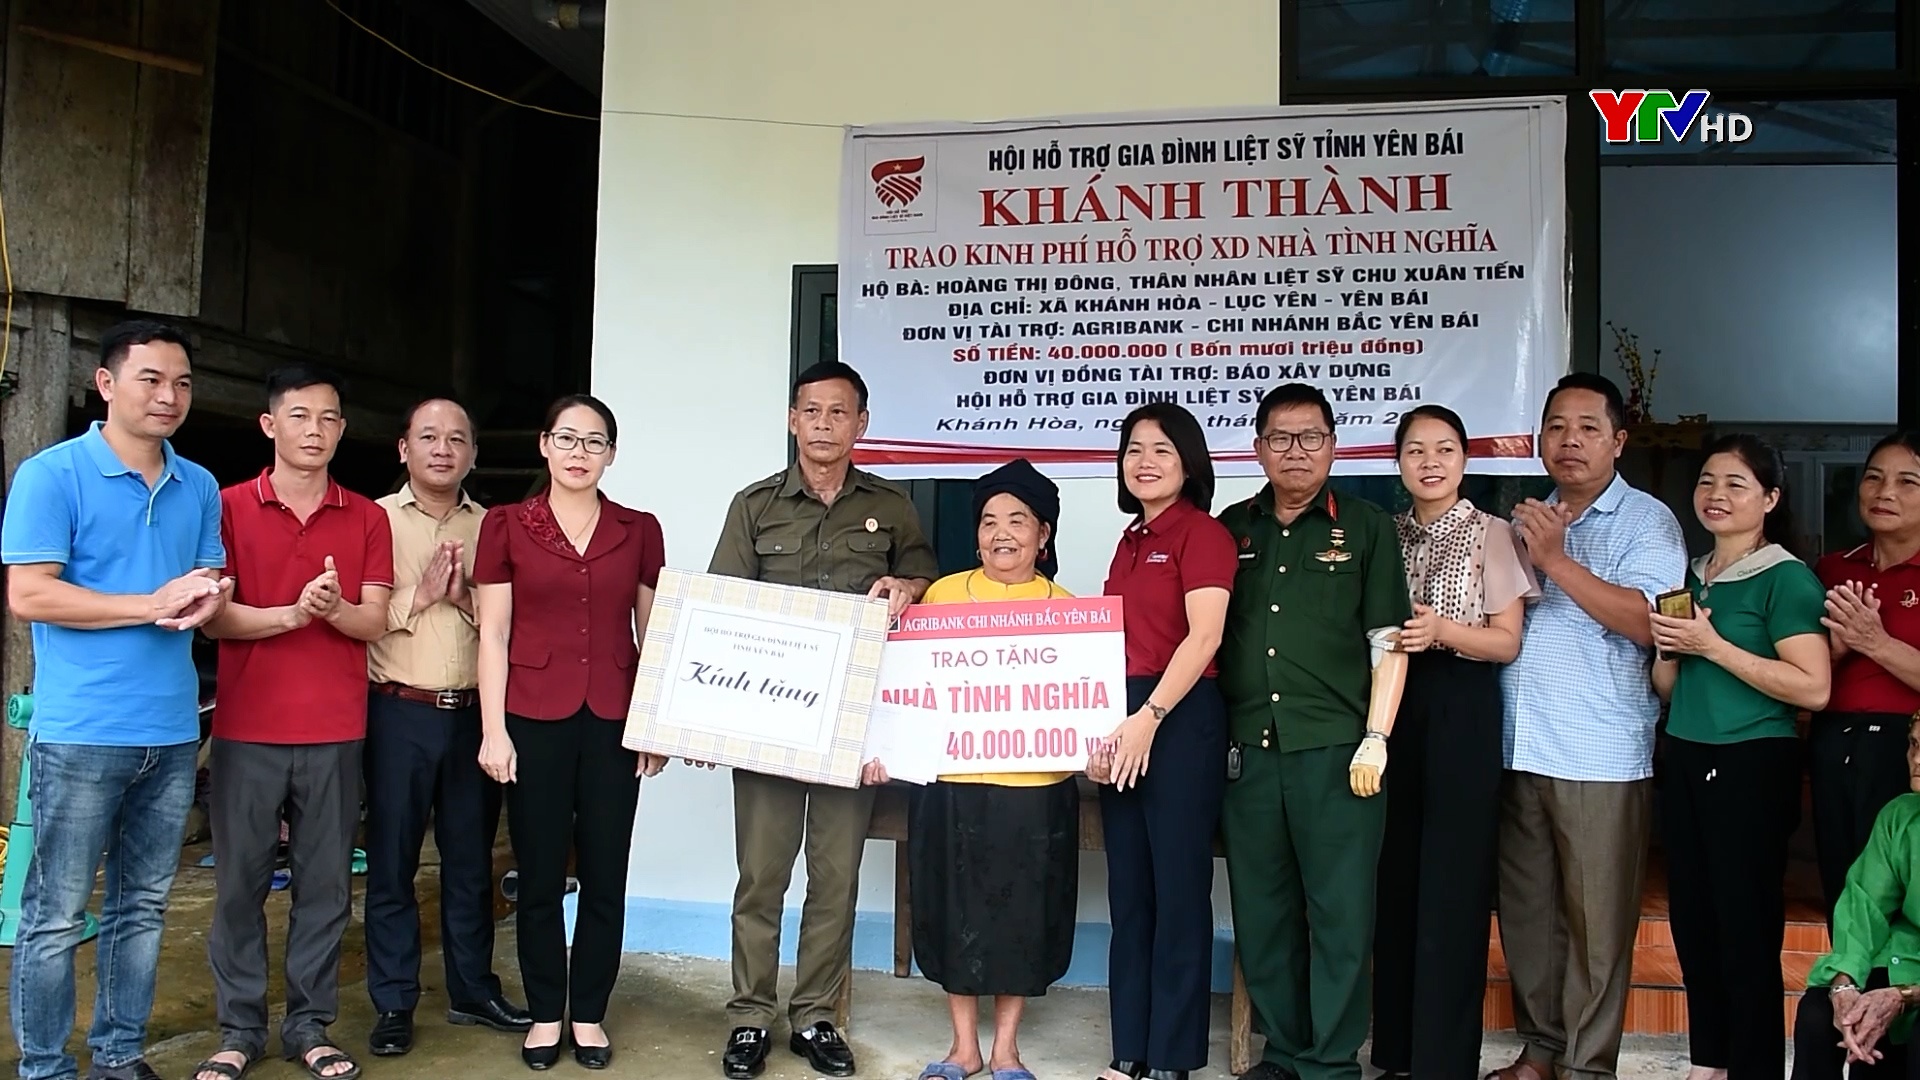 Hội Hỗ trợ gia đình liệt sỹ tỉnh Yên Bái trao hỗ trợ nhà tình nghĩa tại Lục Yên